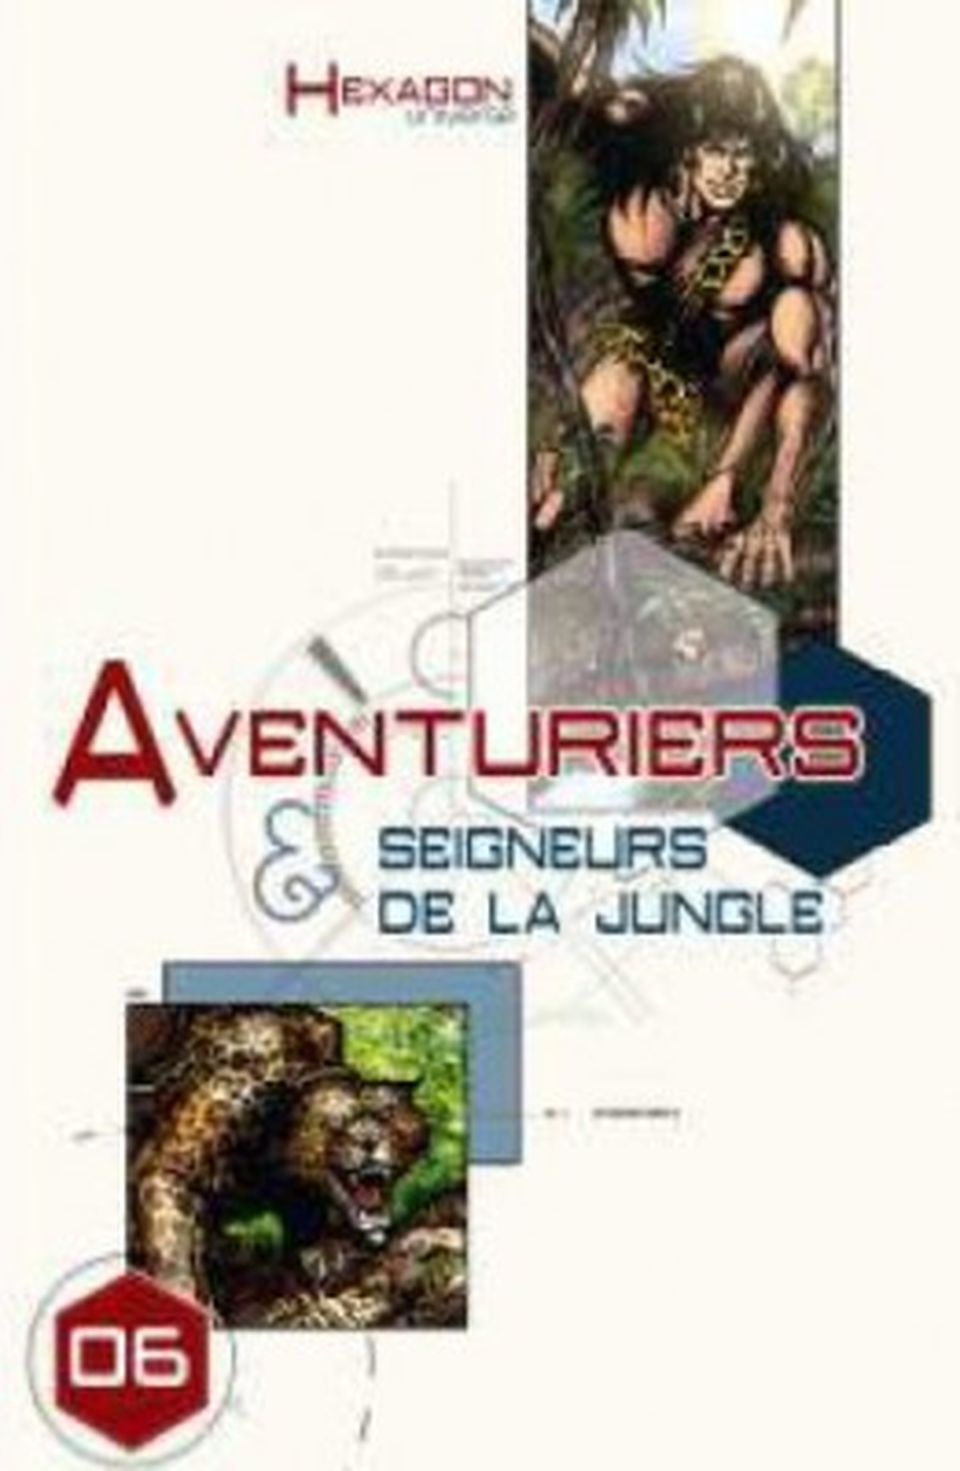 Hexagon Universe 06 : Aventuriers & Seigneurs de la jungle image